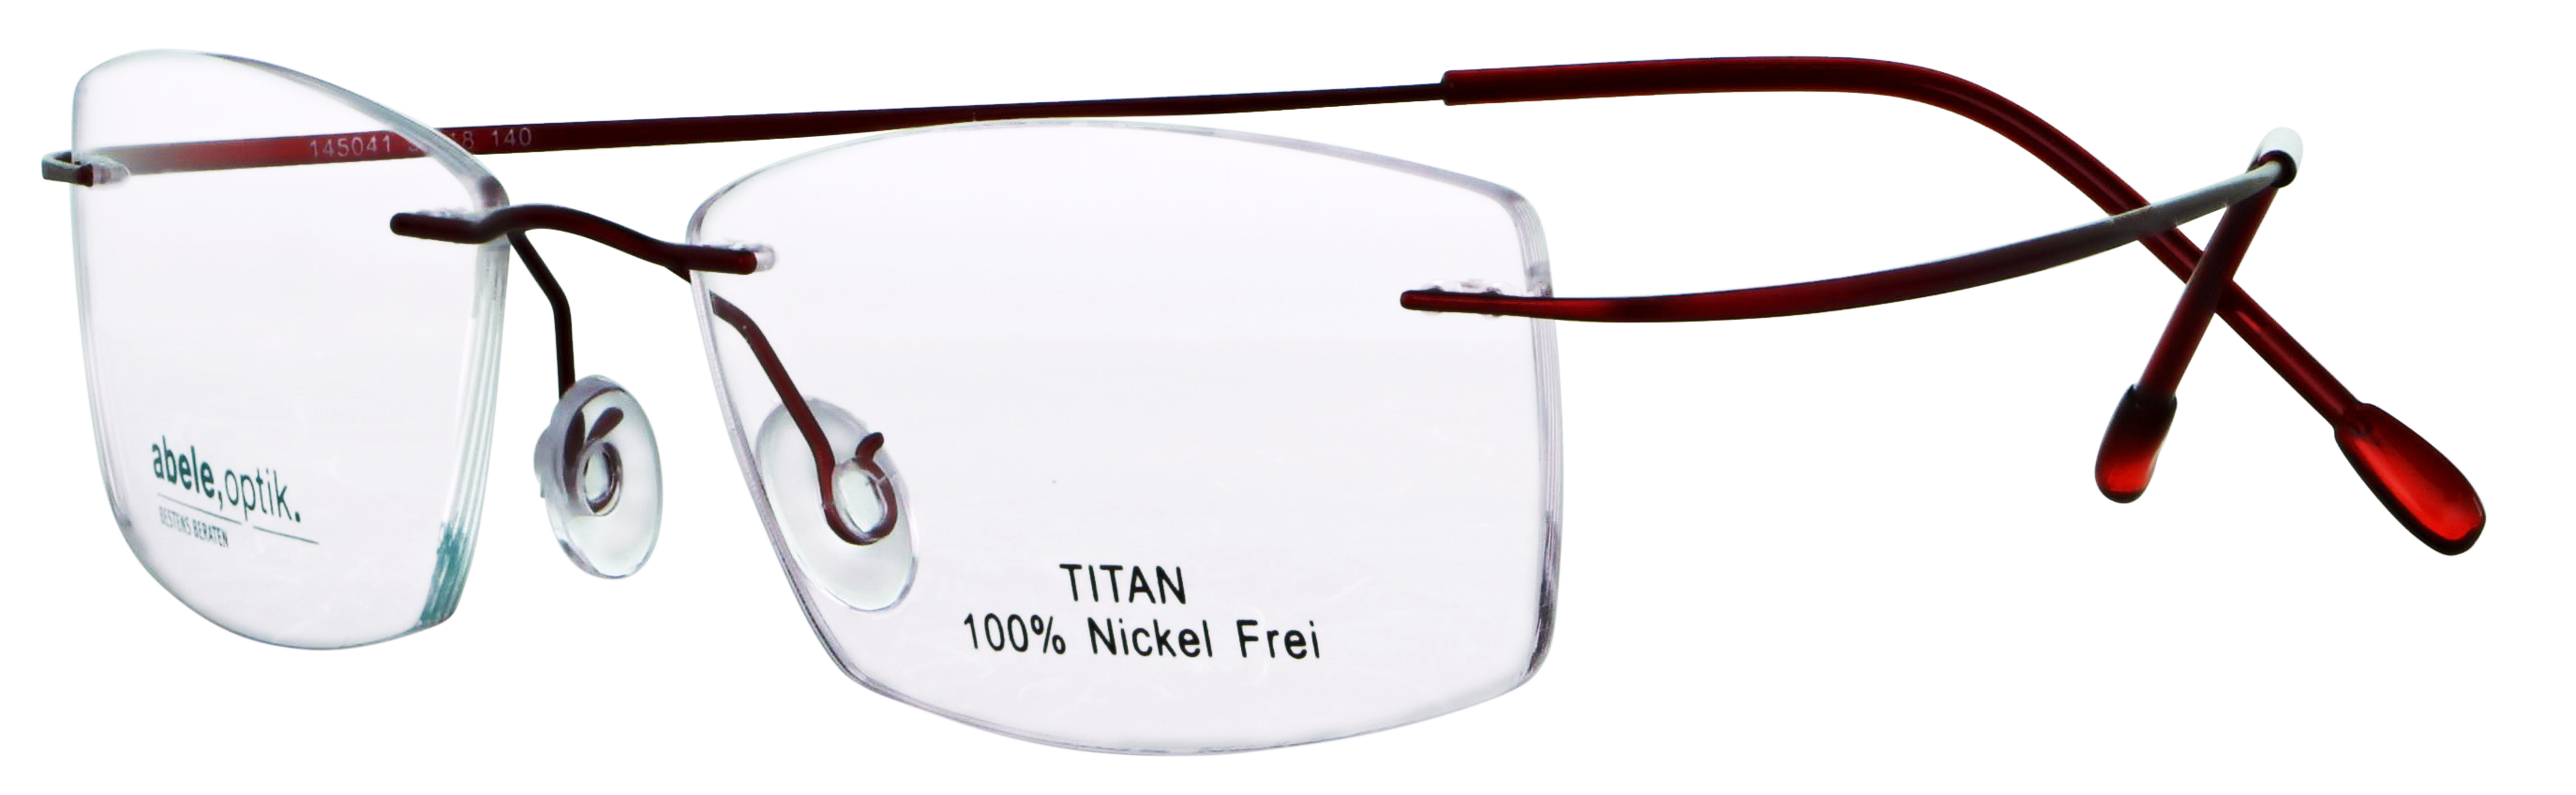 Das Bild zeigt die Korrektionsbrille 145041 von der Marke Abele Optik in weinrot.